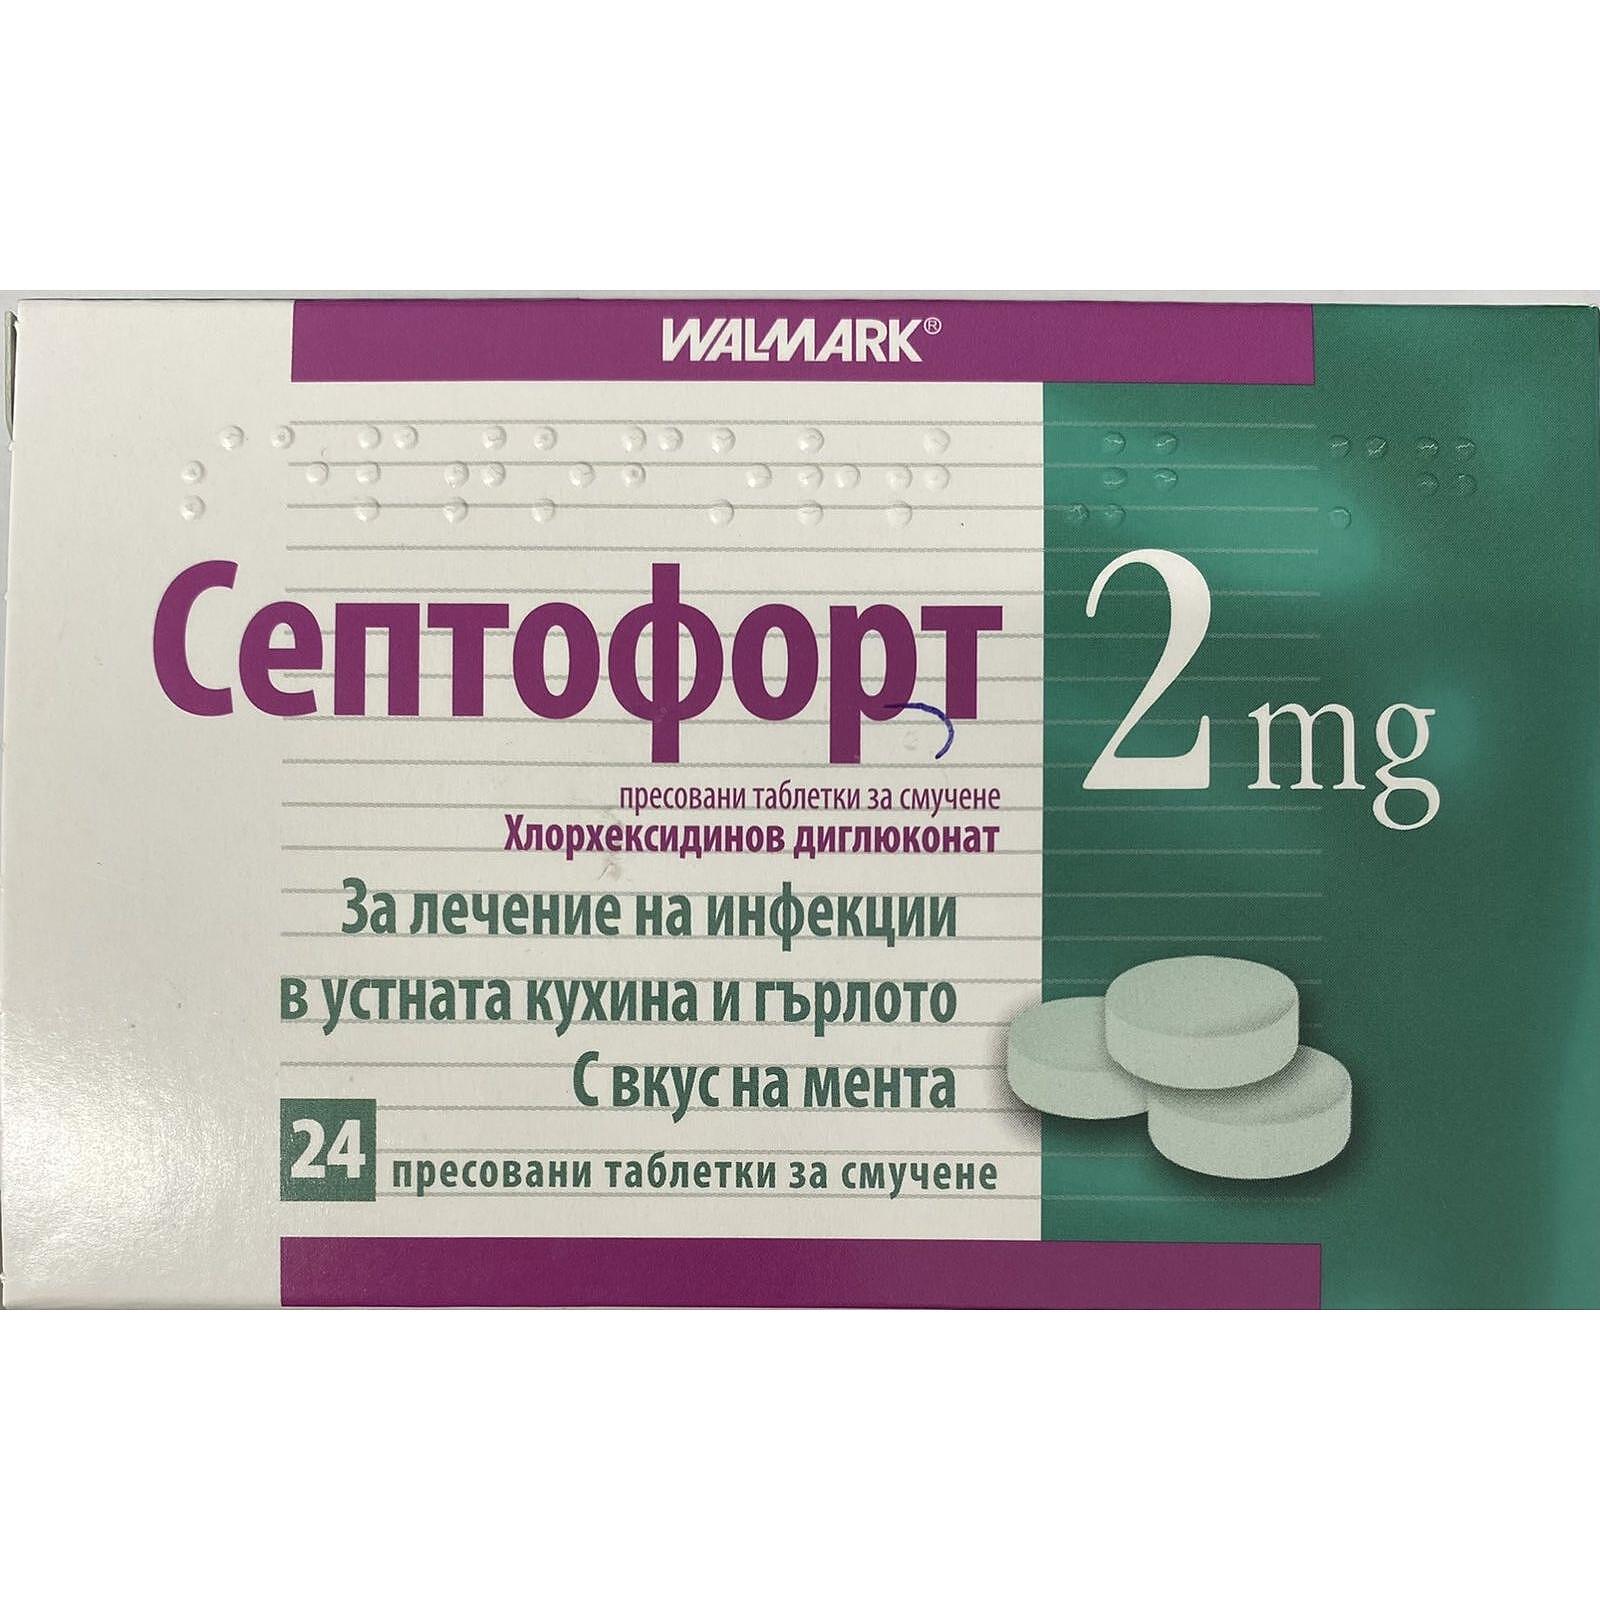 Септофорт таблетки за смучене 2 мг 24 броя | Walmark, Septofort .